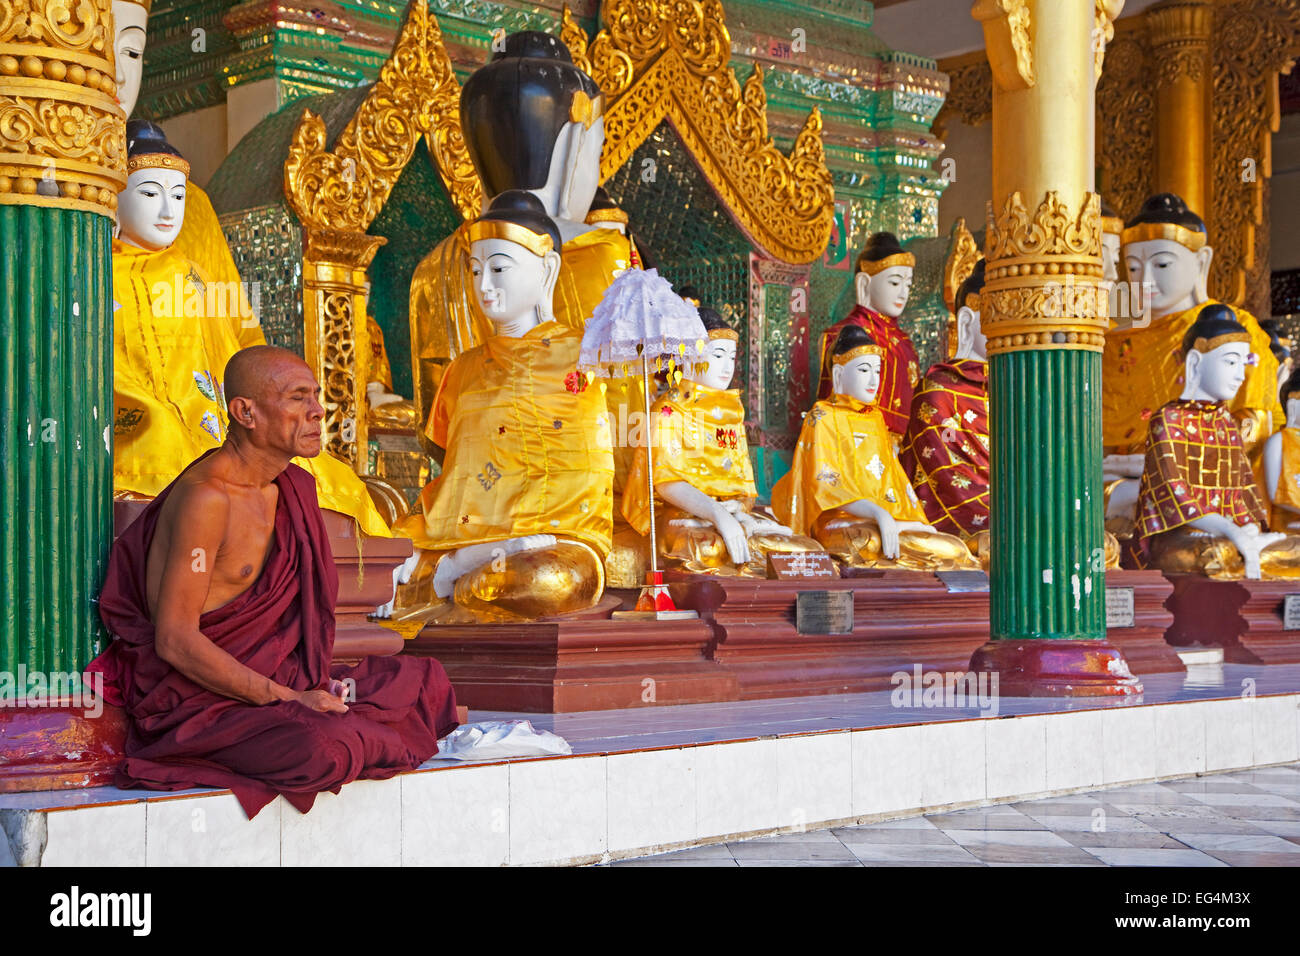 Le moine bouddhiste priant devant les statues de Bouddha dans la pagode Shwedagon à Yangon Daw Zedi / Rangoon, Myanmar / Birmanie Banque D'Images